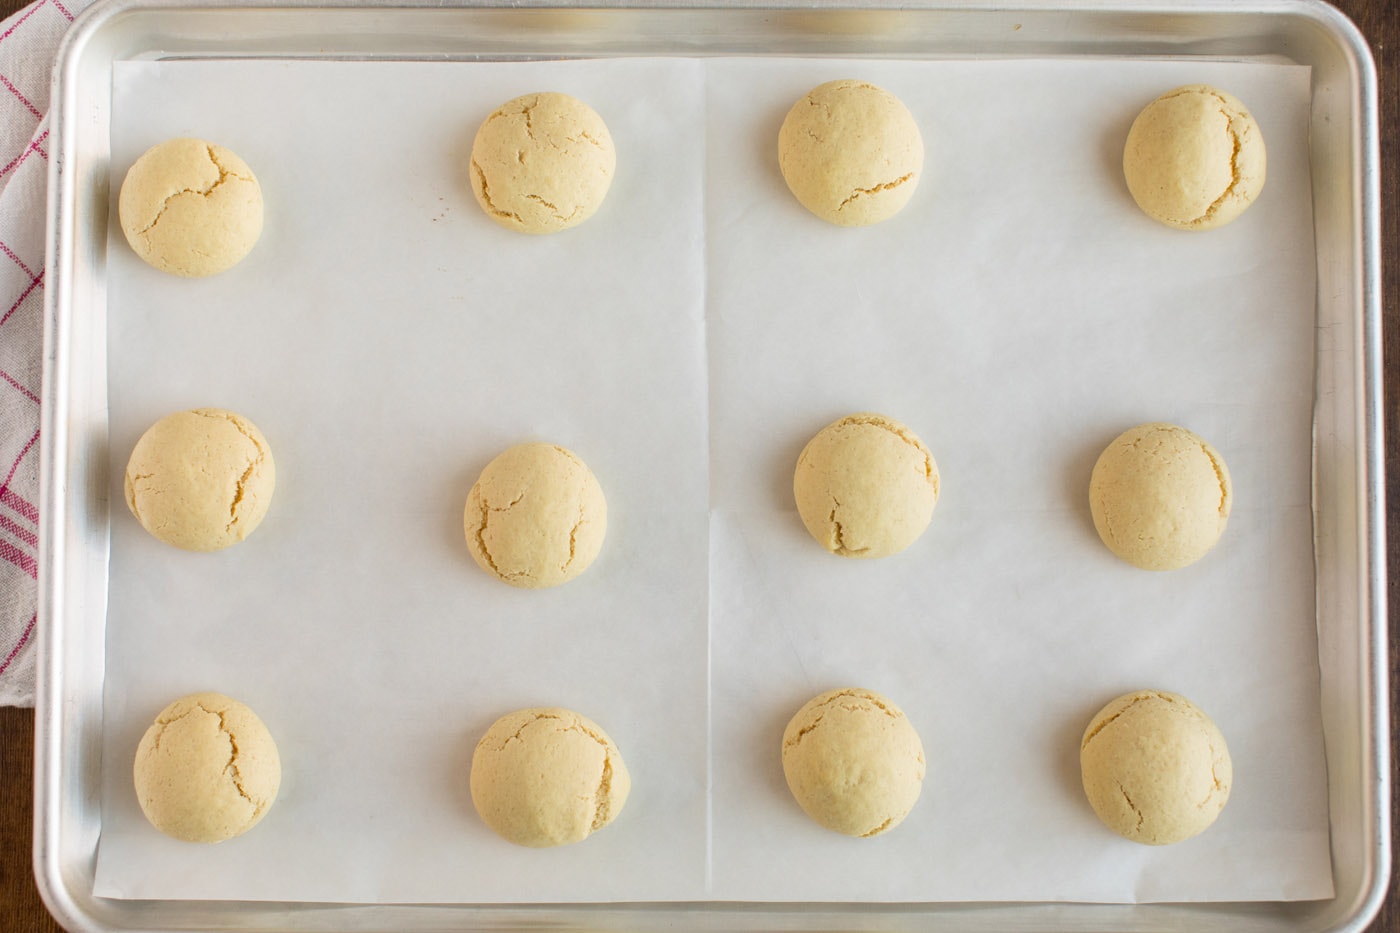 baked cookies on pan